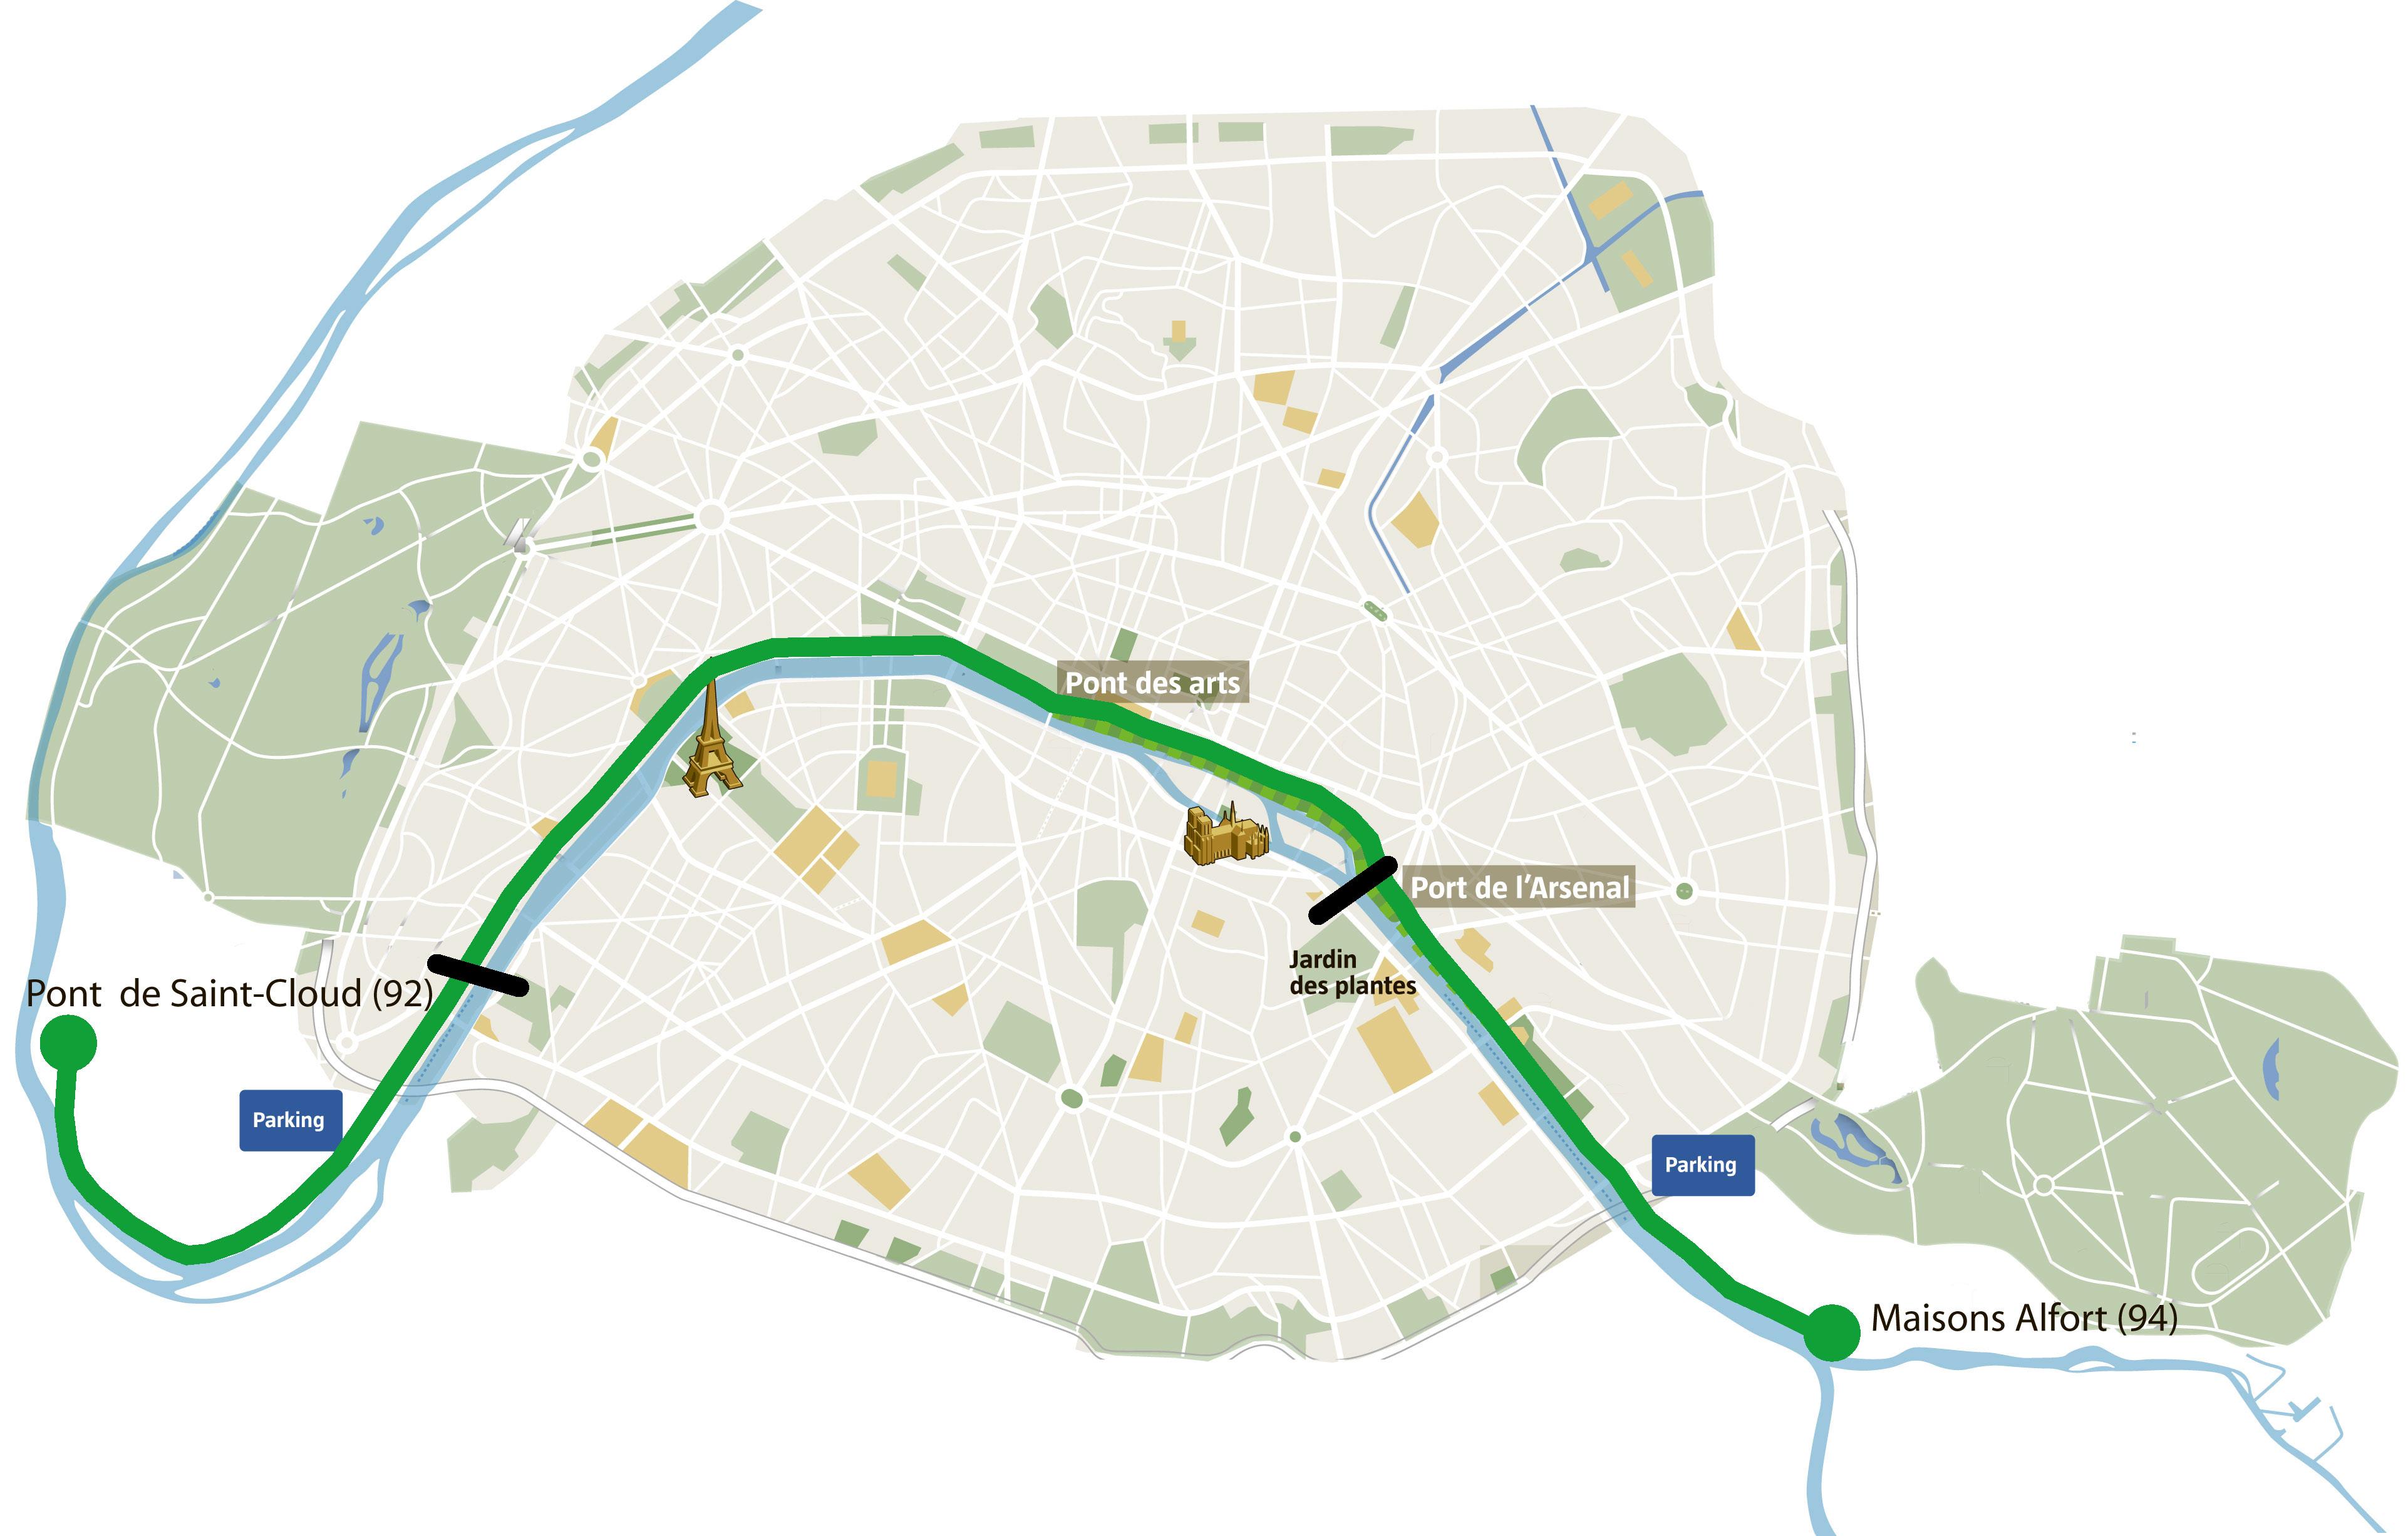 Carte de Paris - Trame verte
télécharger l'image en HD